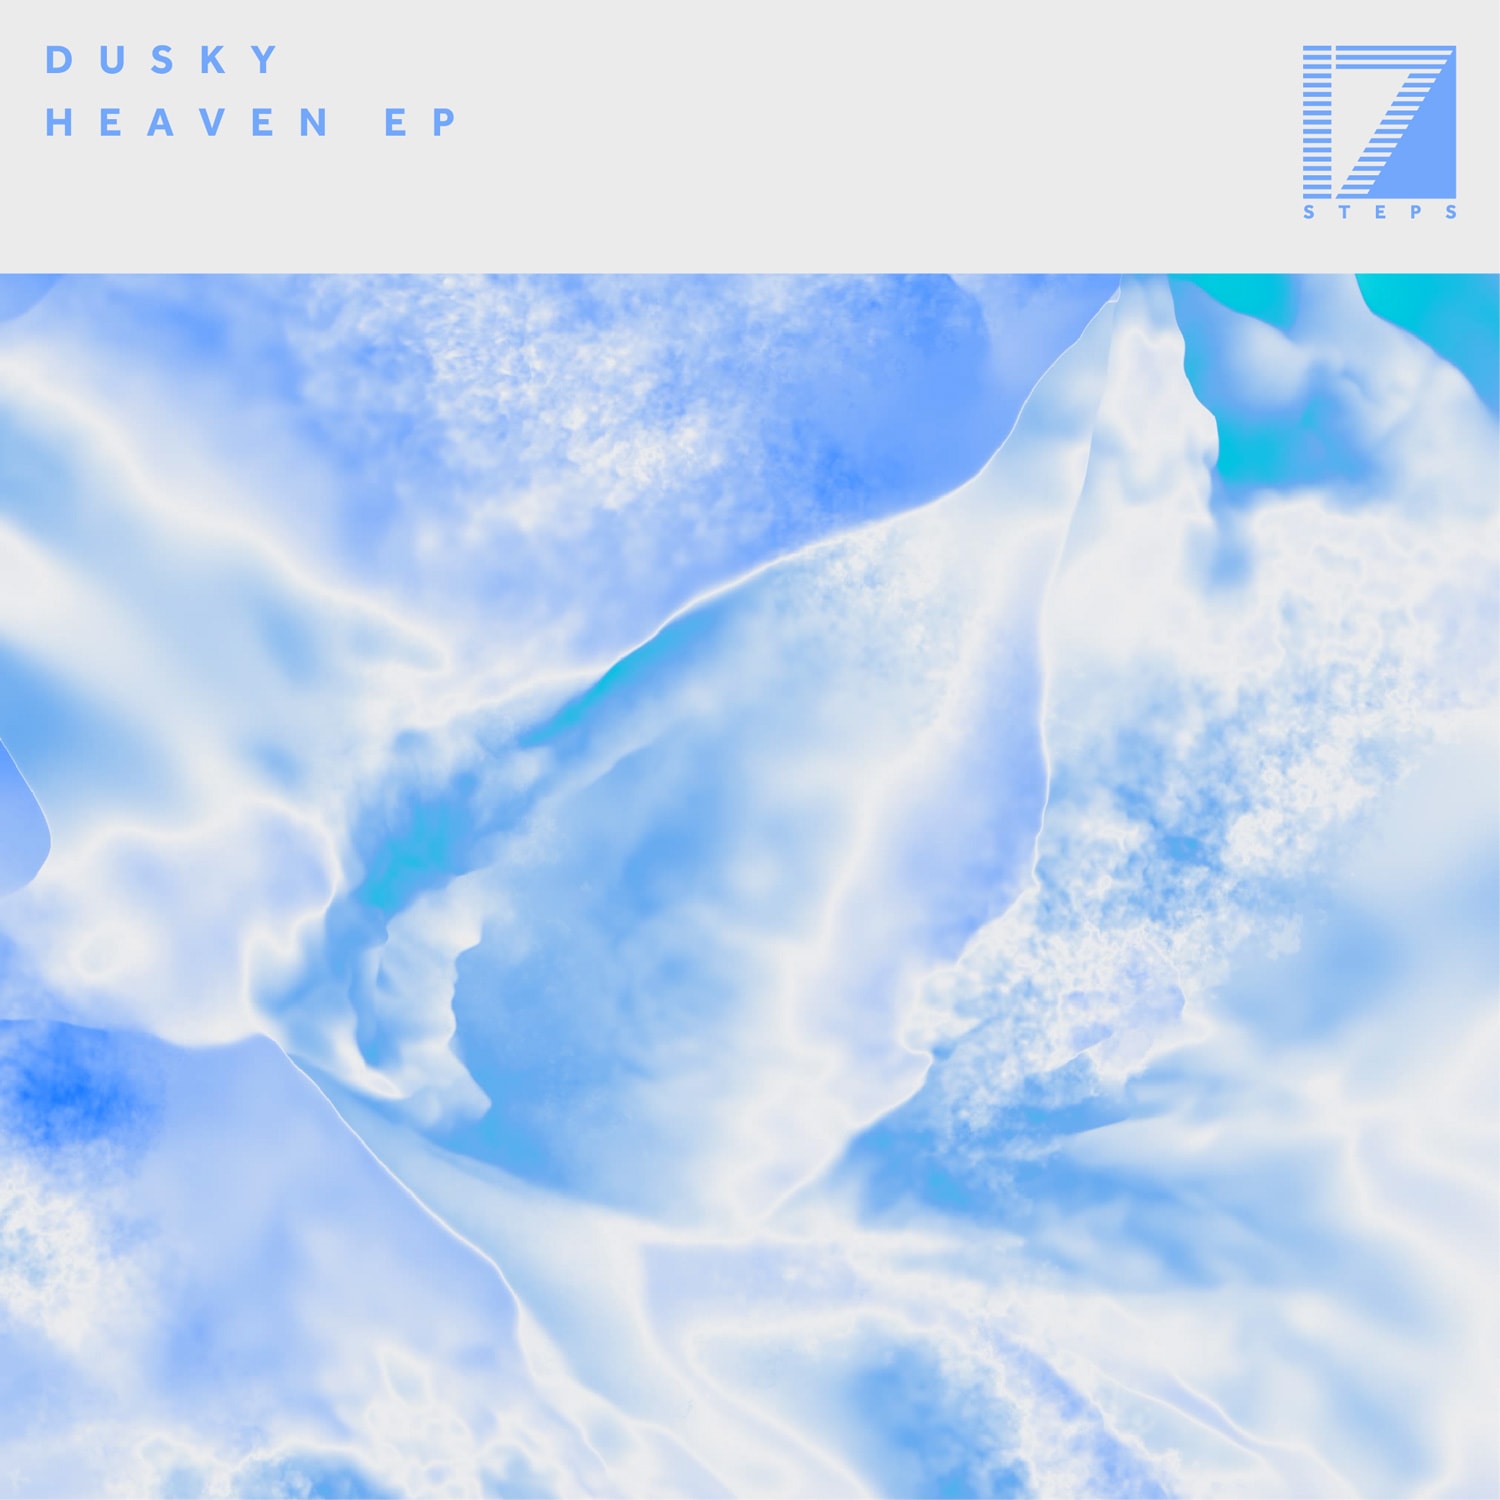 DUSKY – HEAVEN EP